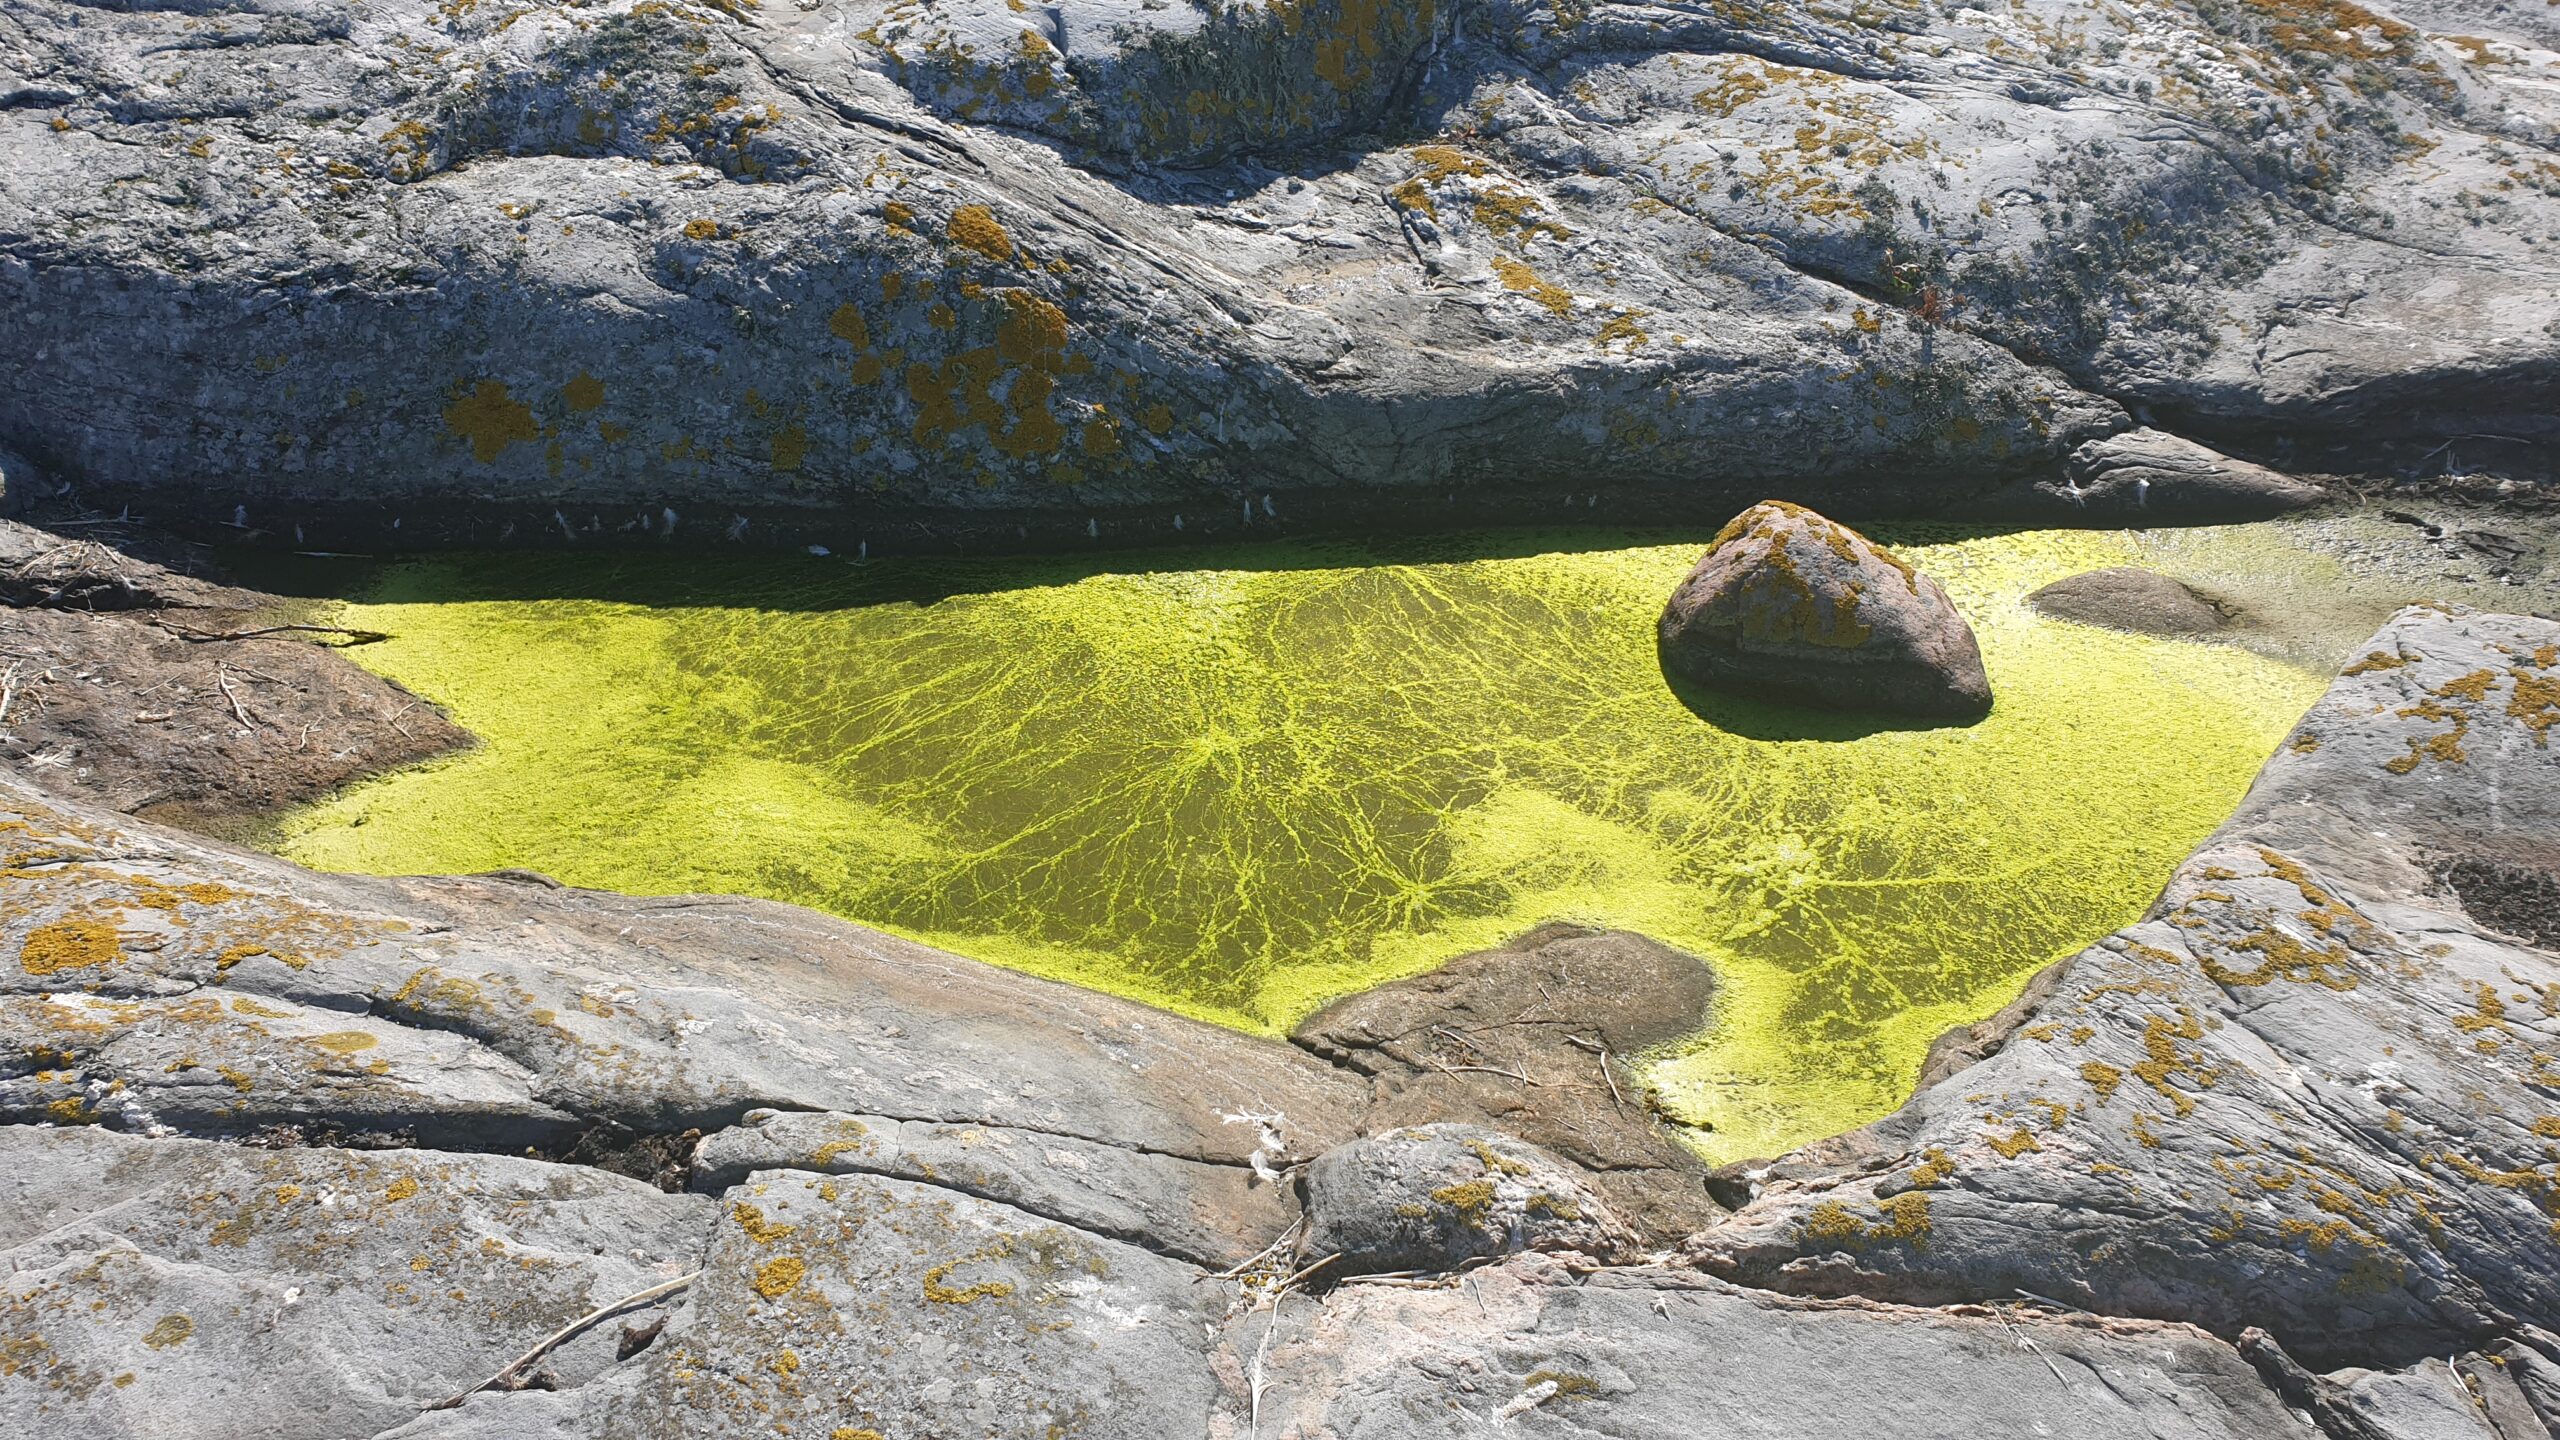 Algblomning i hällkar - är det cyanobakterier eller alger? Forskning om cyanobakterier kan ge oss fossilfria jetbränslen.